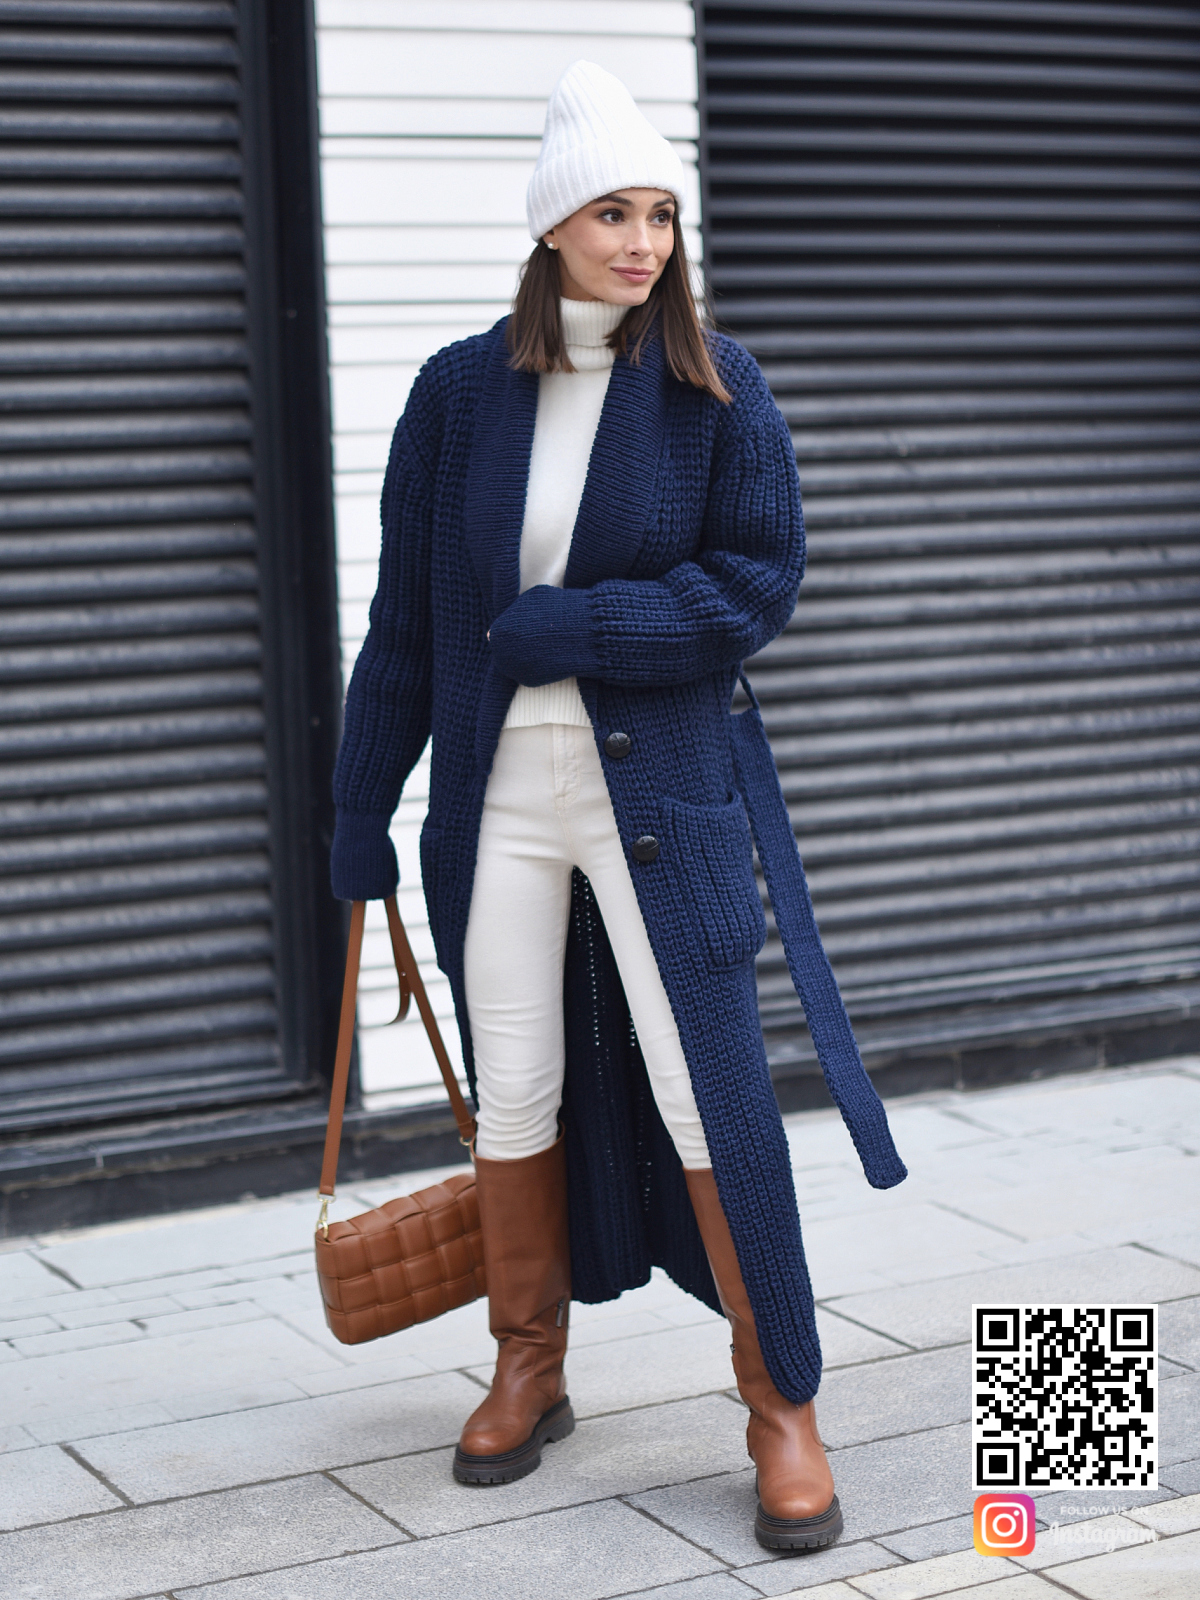 На шестой фотографии кардиган синий женский крупным планом в интернет-магазине вязаной одежды Shapar.